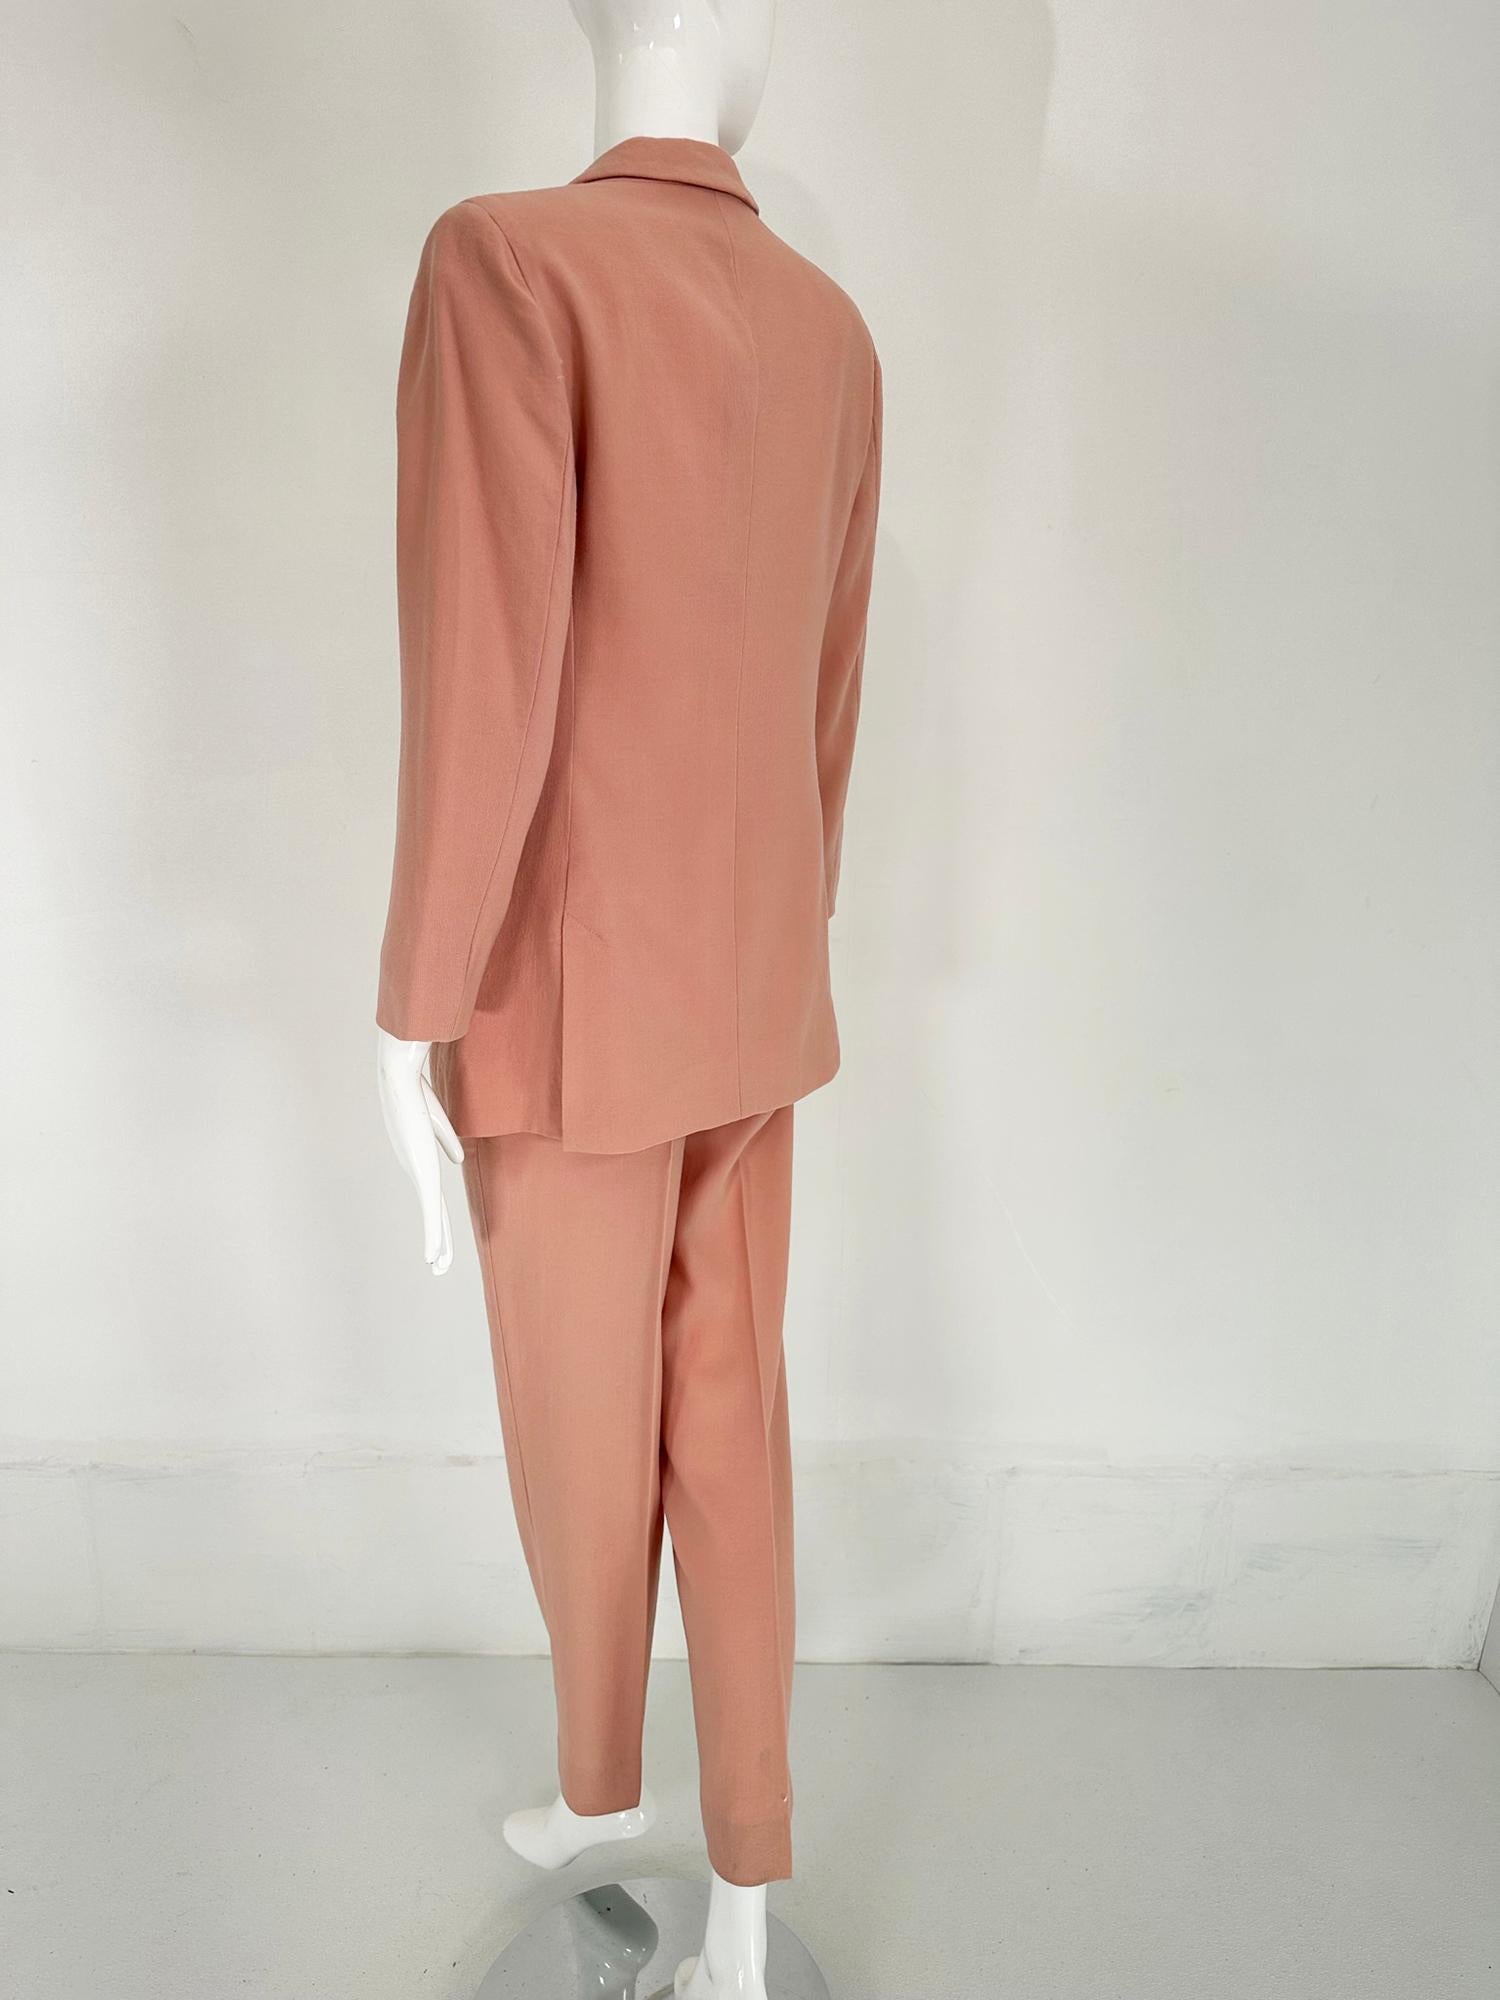 Giorgio Armani Peach Light Wool Double Breasted Pant Set 1990s 4